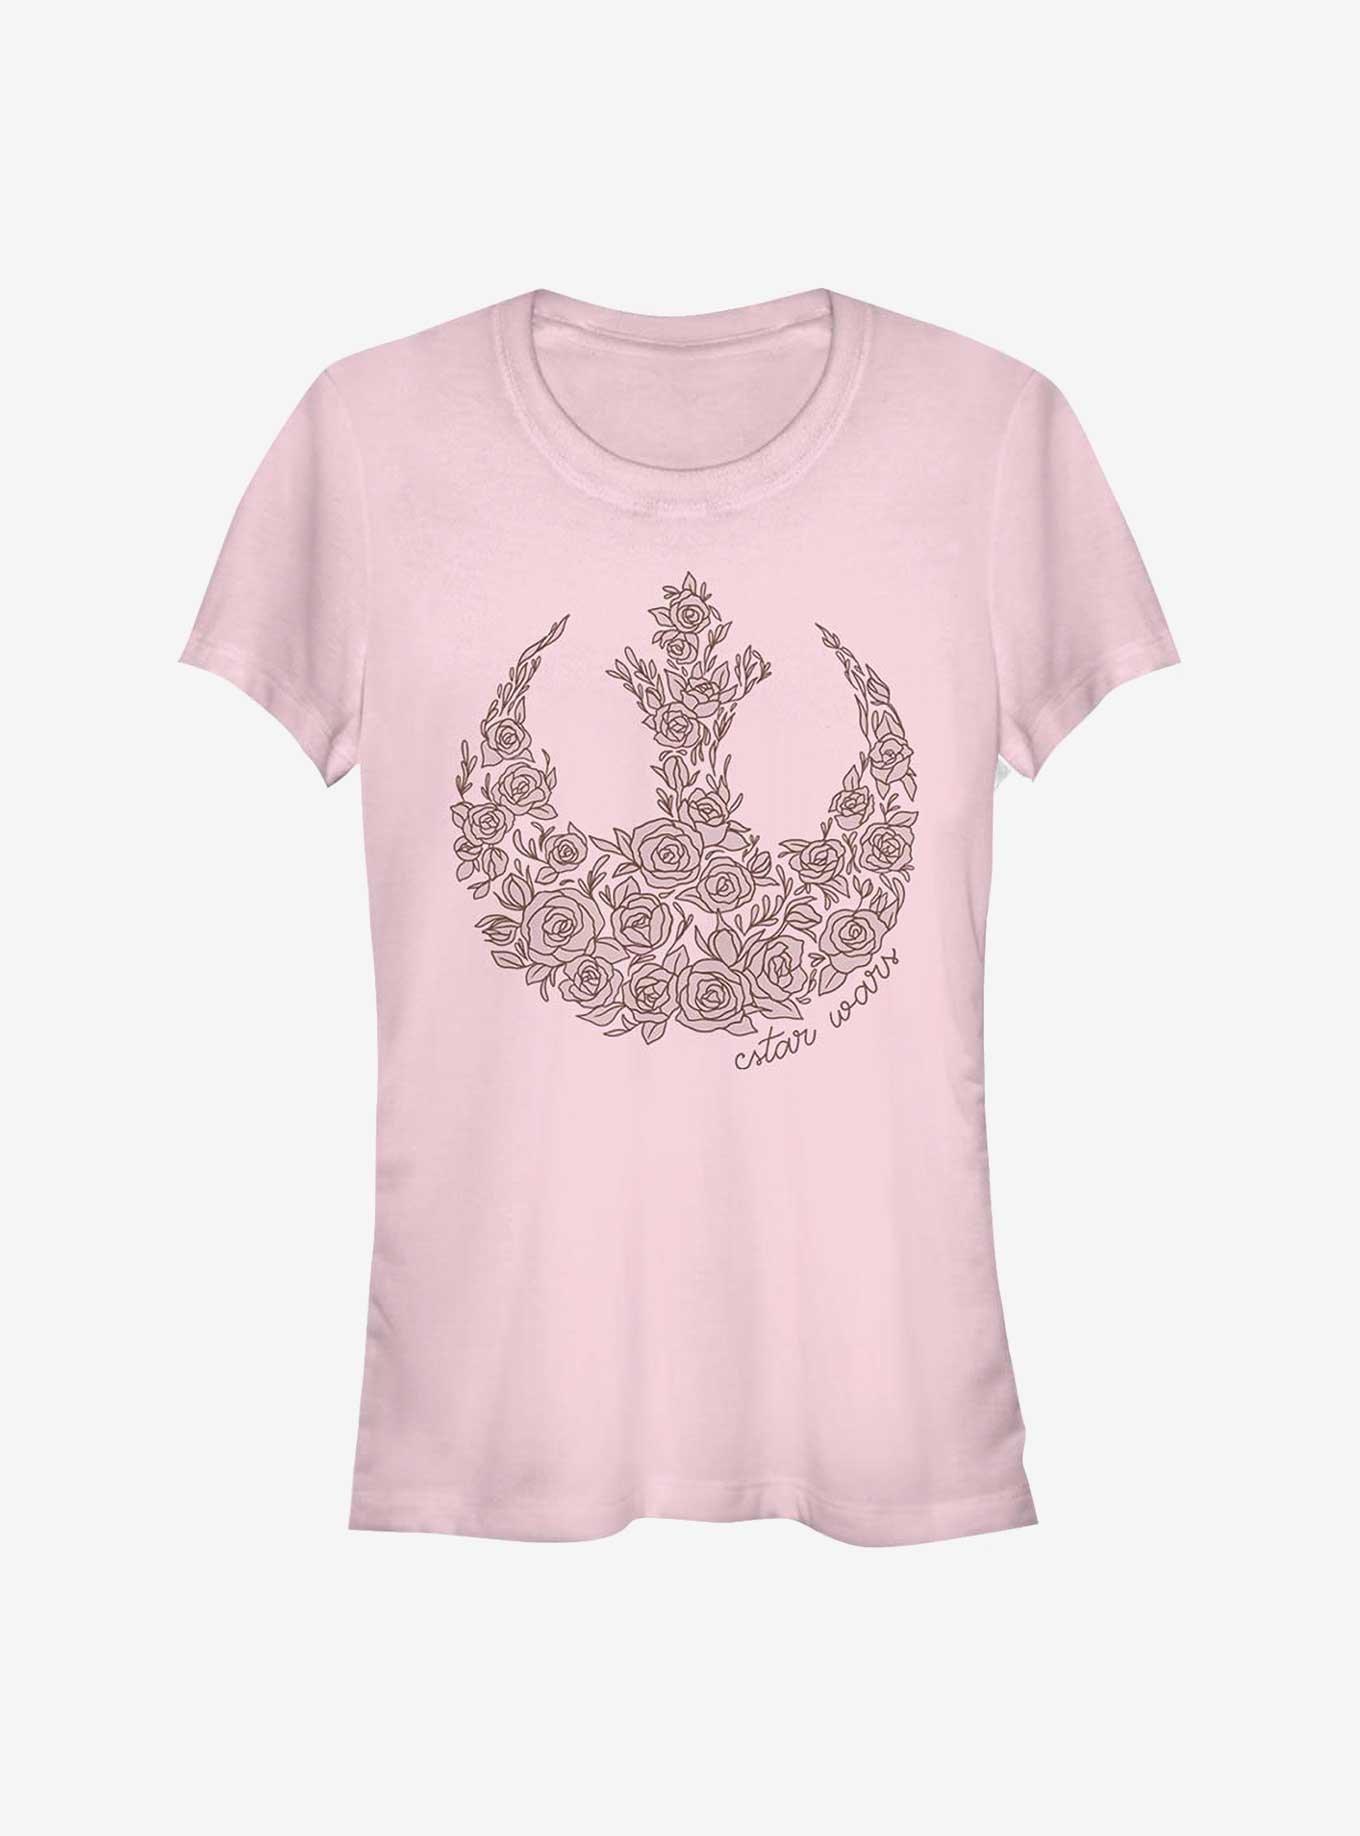 Star Wars Rose Rebel Girls T-Shirt